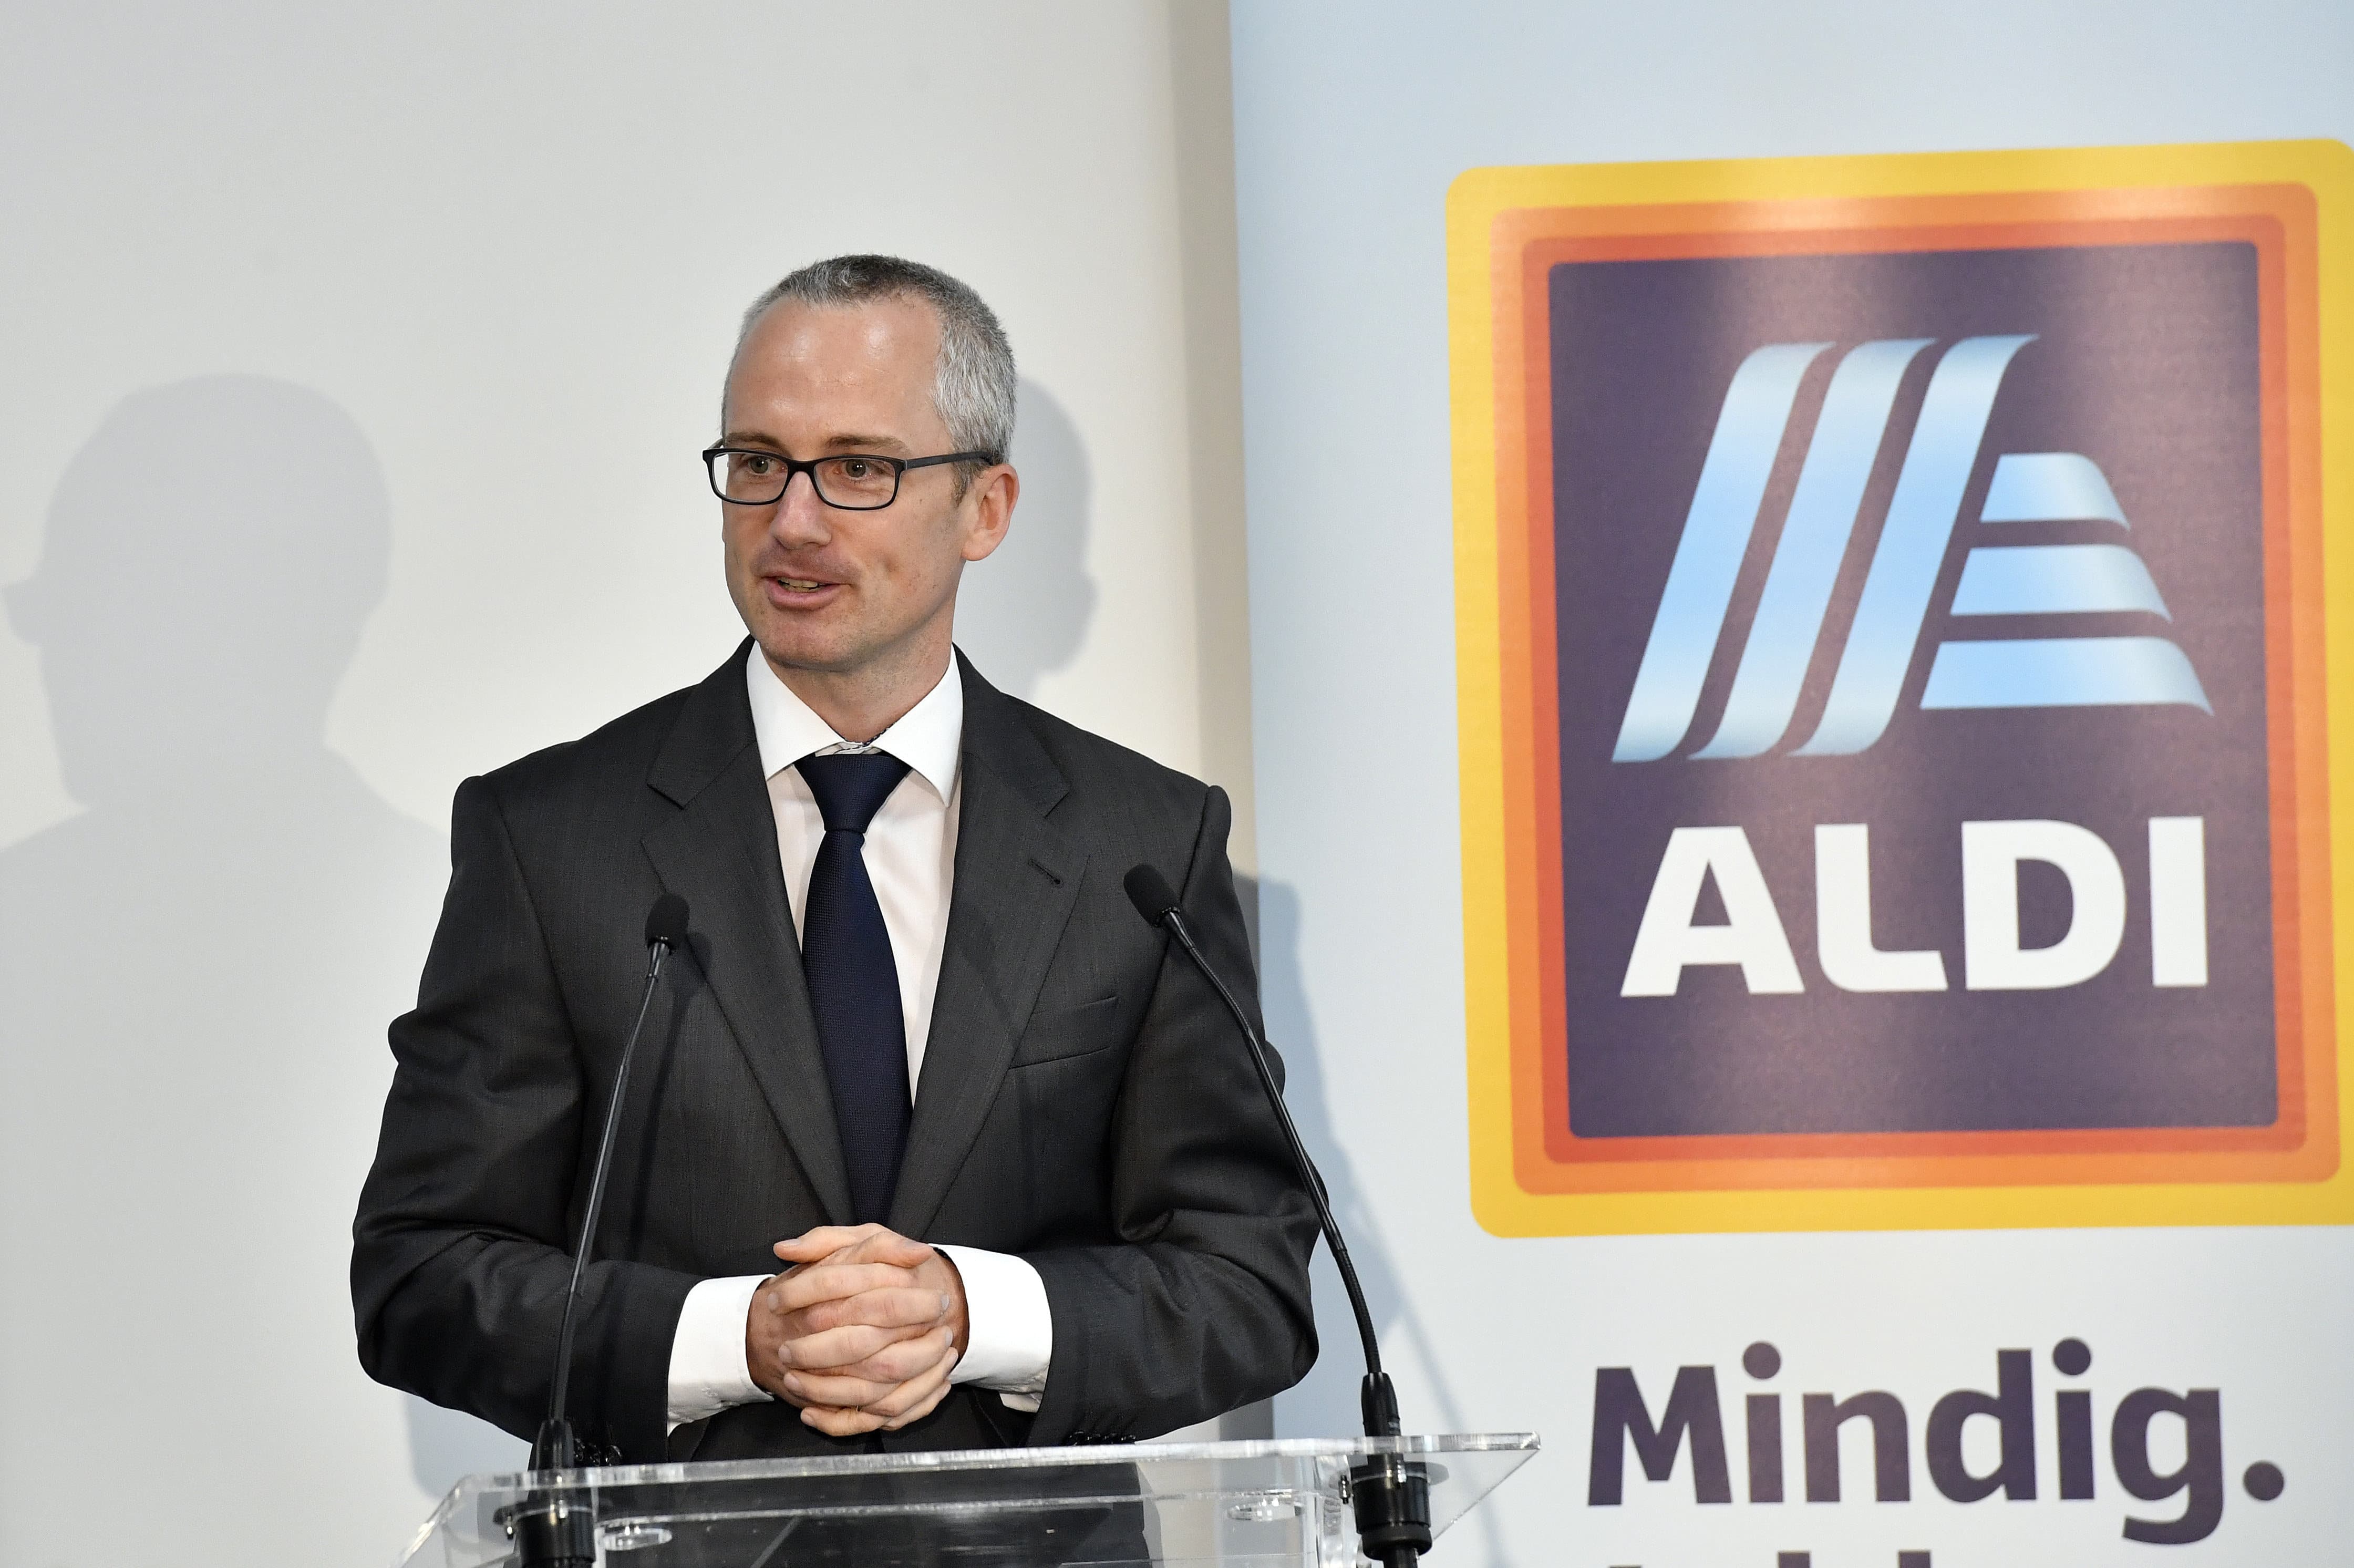 ديفيد جودشالك - الرئيس التنفيذي لشركة ALDI International Services GmbH & Co.